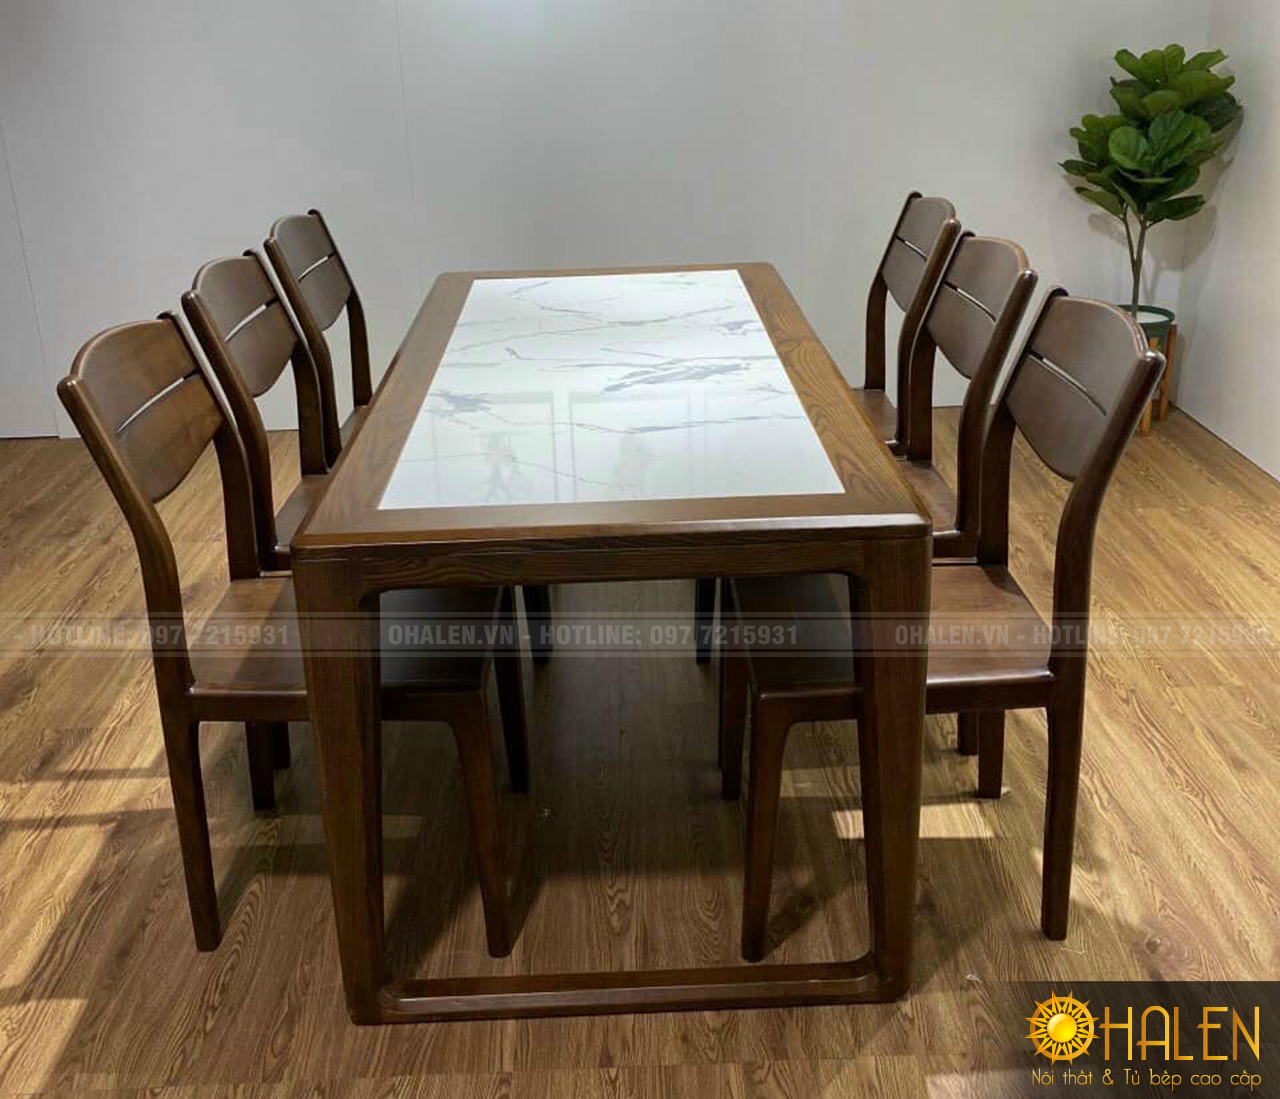 Điểm nhấn của mẫu bàn ăn này là sự kết hợp mặt bàn ăn bằng gỗ và đá tạo tính thẩm mỹ cao